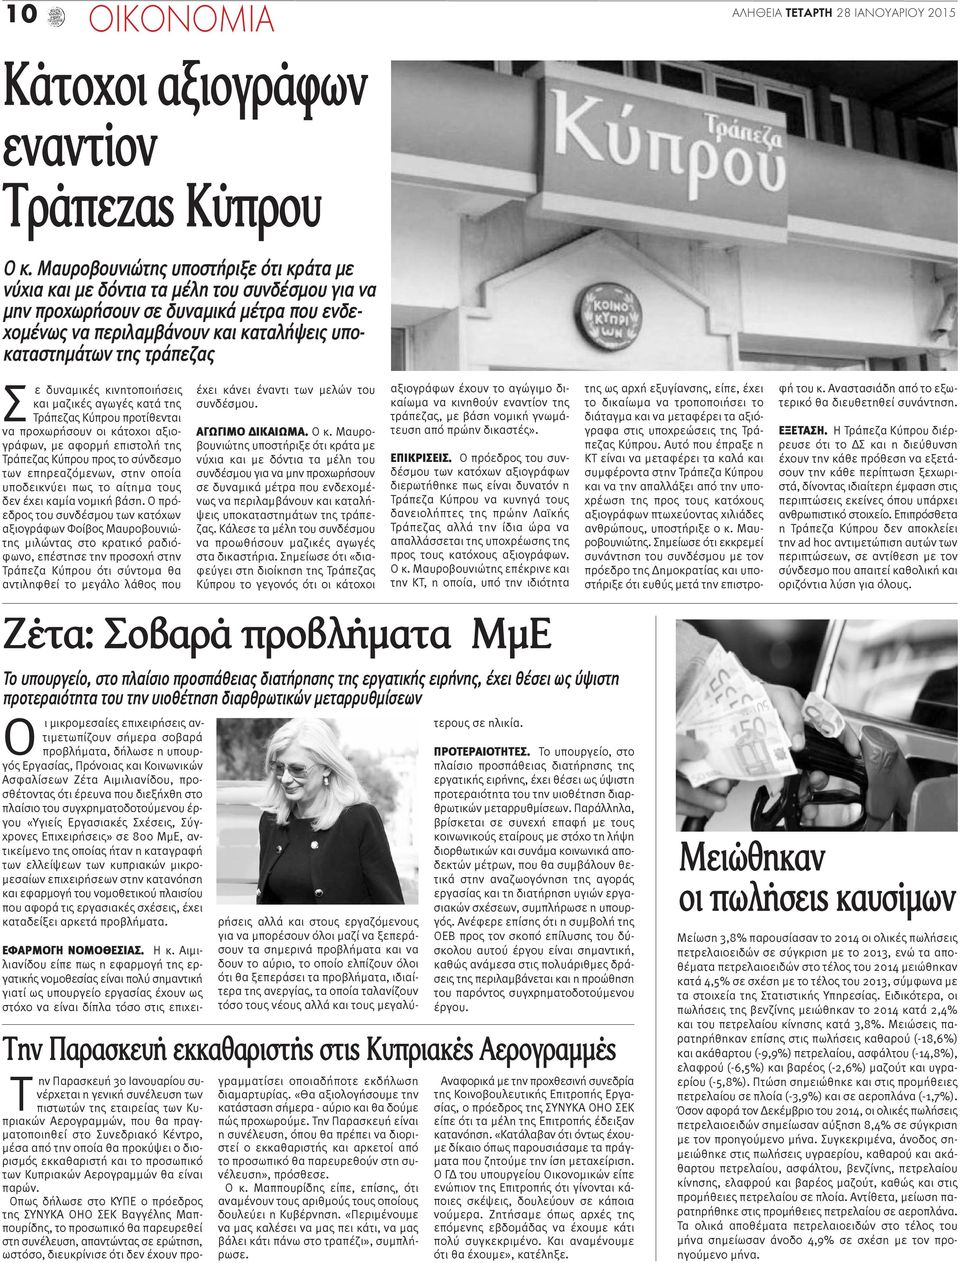 Σ ε δυναμικές κινητοποιήσεις και μαζικές αγωγές κατά της Τράπεζας Κύπρου προτίθενται να προχωρήσουν οι κάτοχοι αξιογράφων, με αφορμή επιστολή της Τράπεζας Κύπρου προς το σύνδεσμο των επηρεαζόμενων,